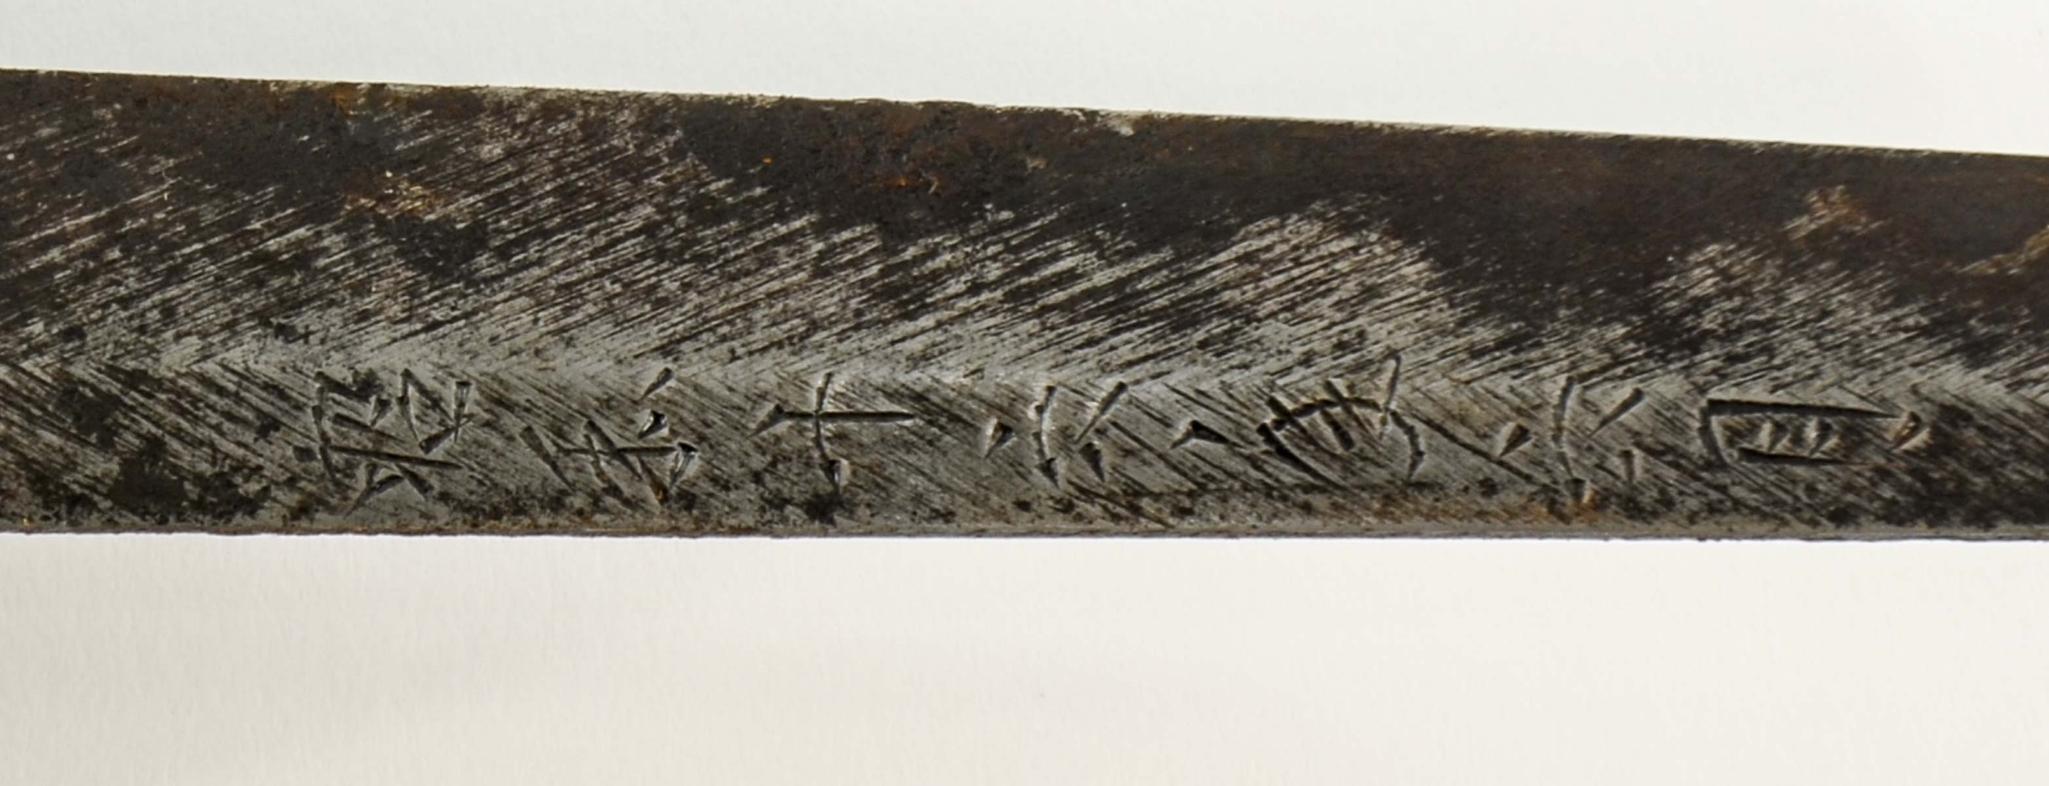 19th C. Japanese Katana Sword